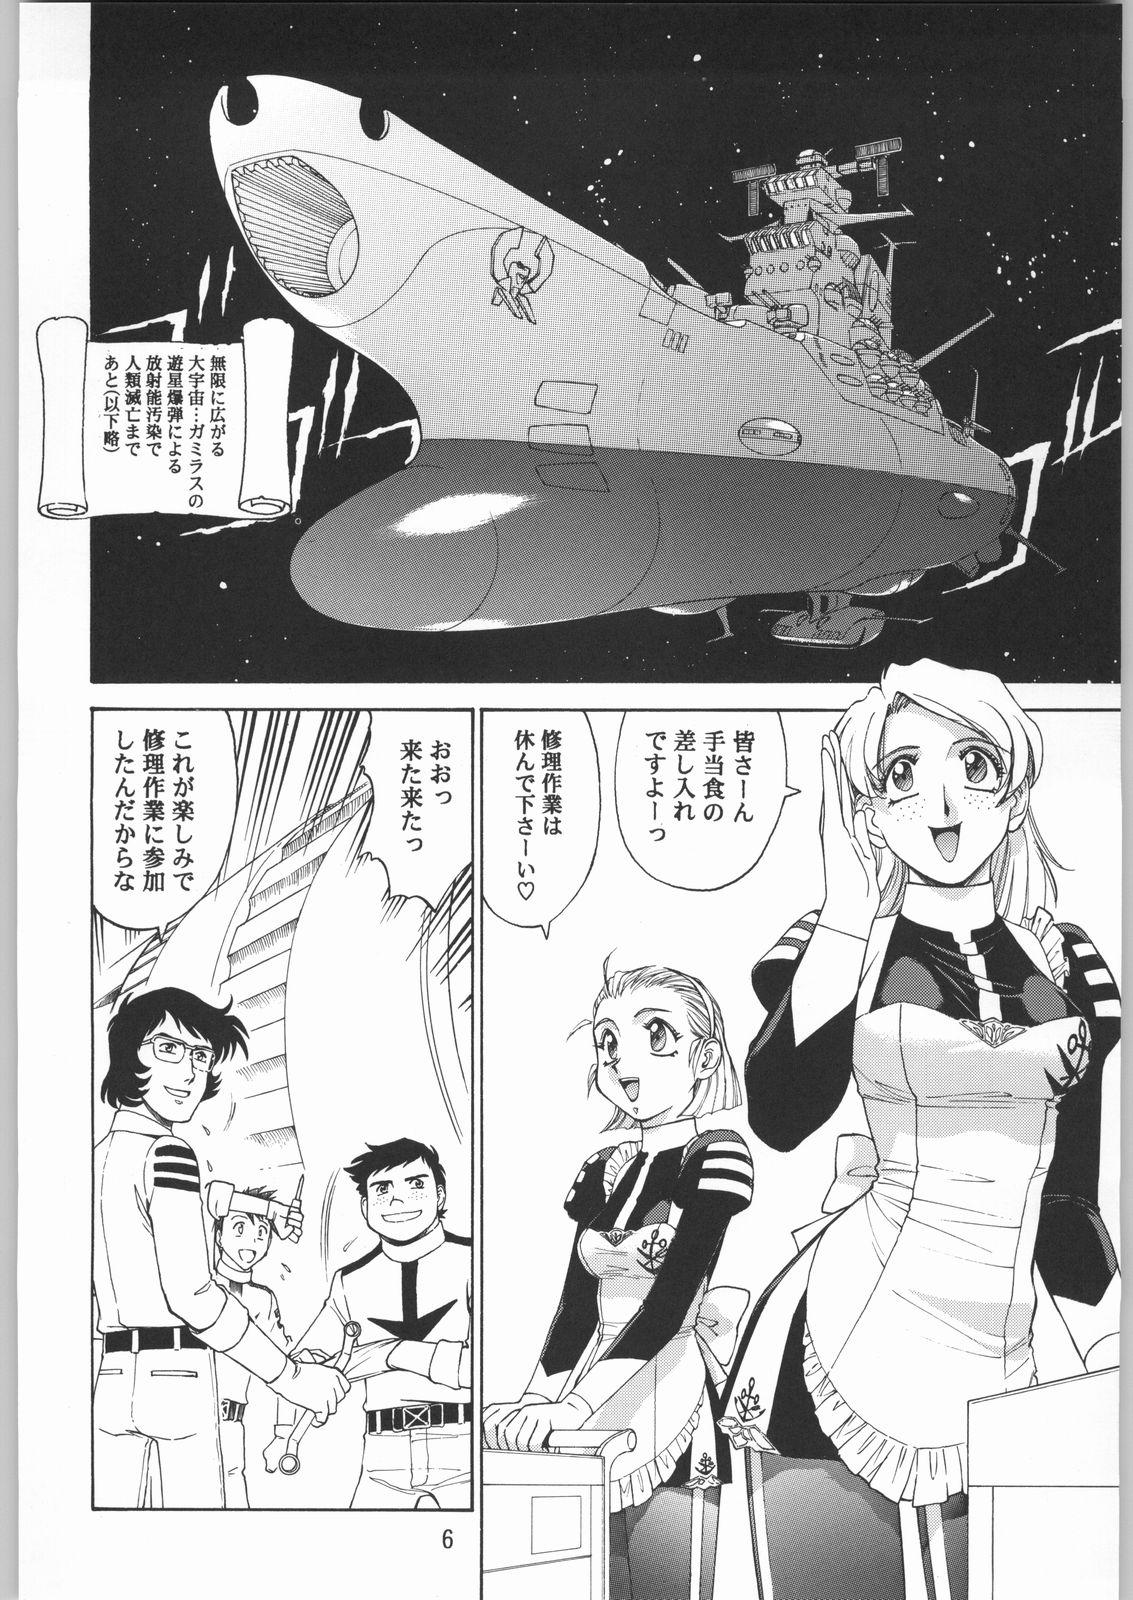 Gets Megaton Punch 1 - Space battleship yamato Chobits Mouth - Page 5